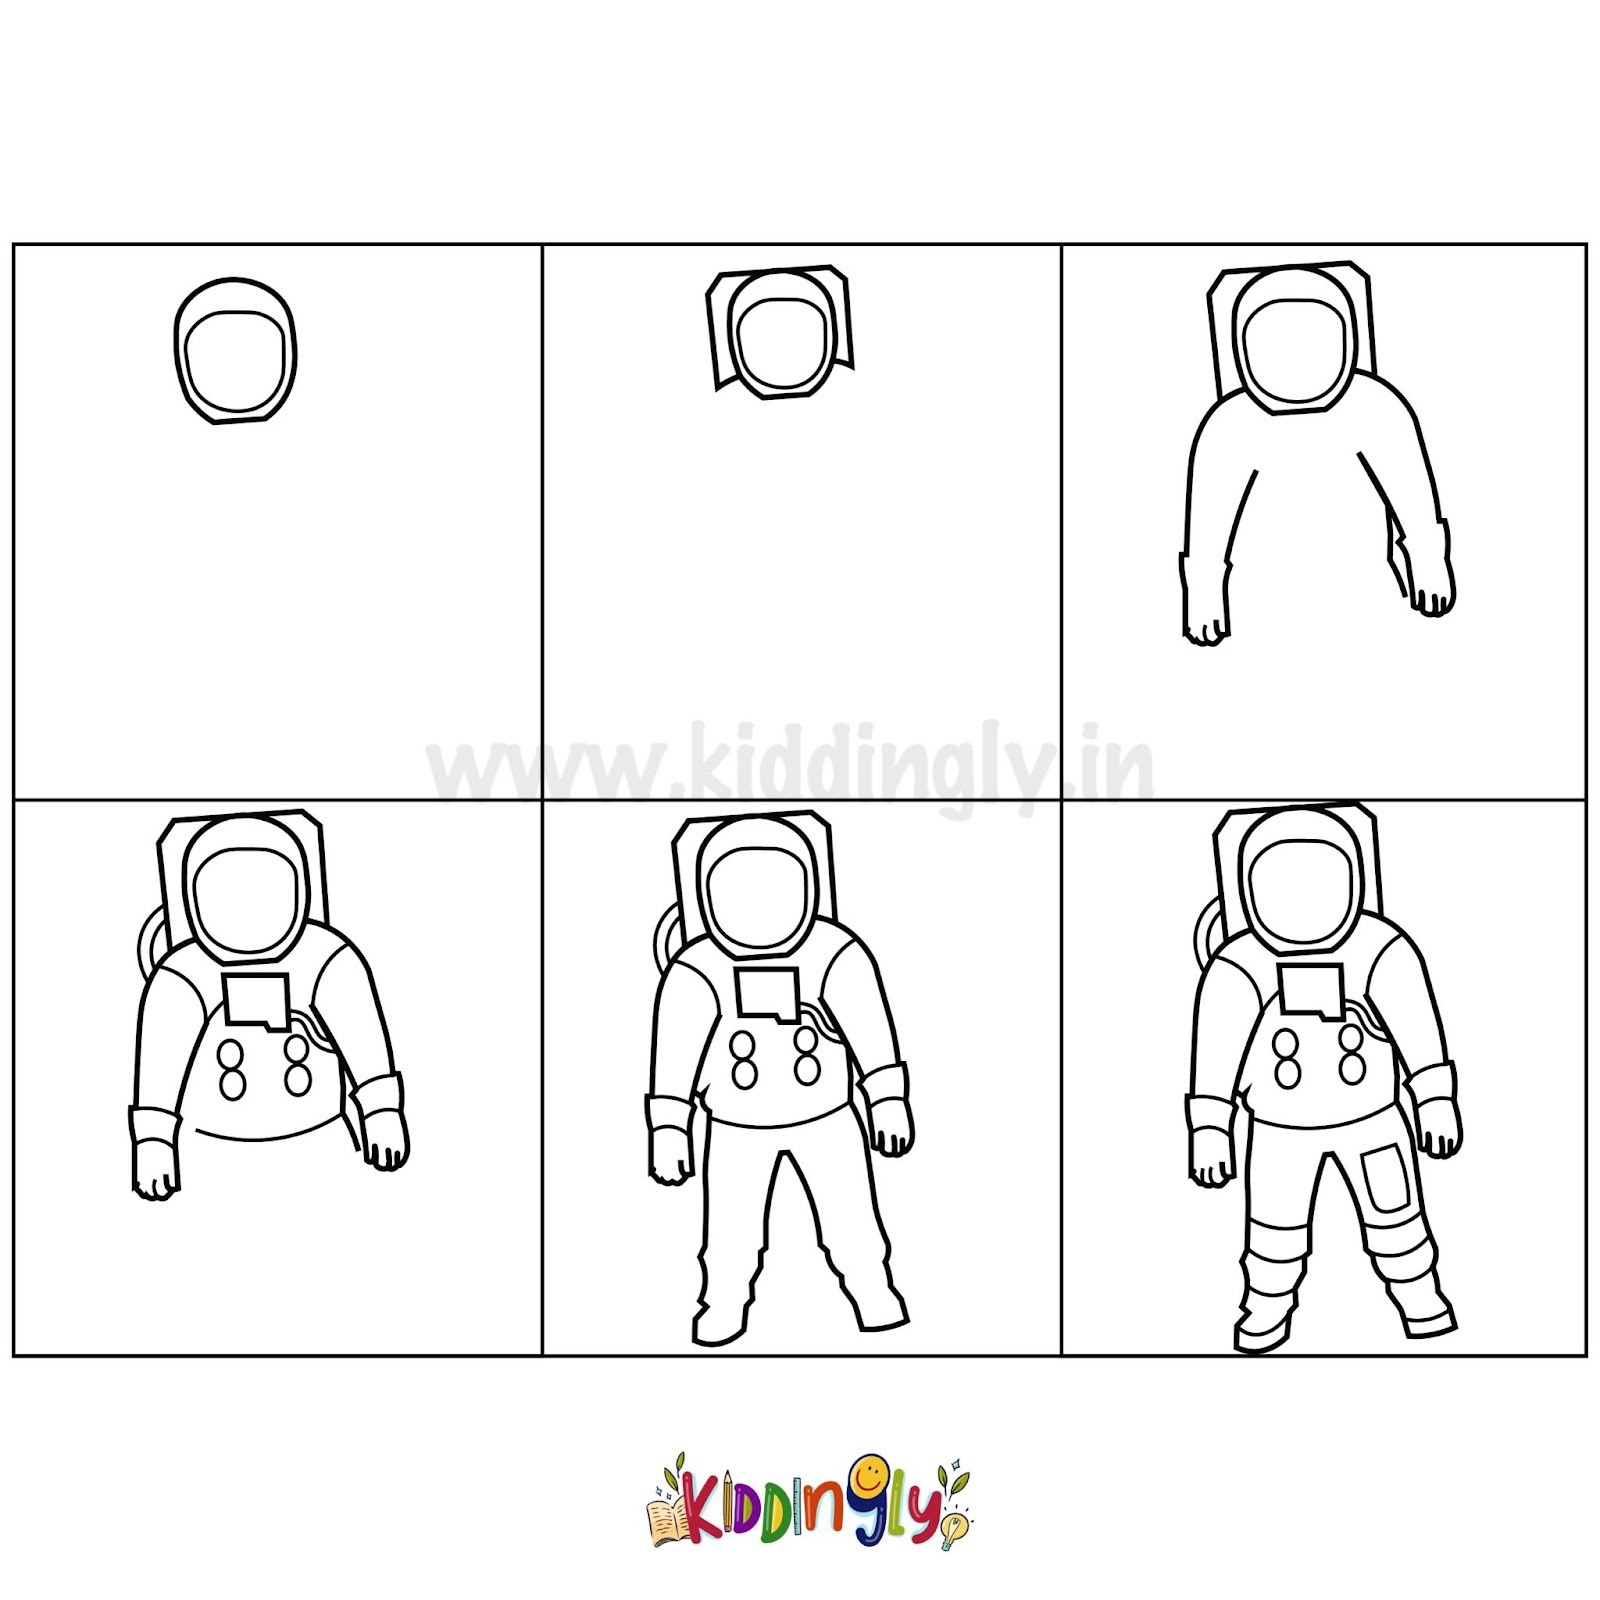 Astronauten-Idee 1 zeichnen ideen